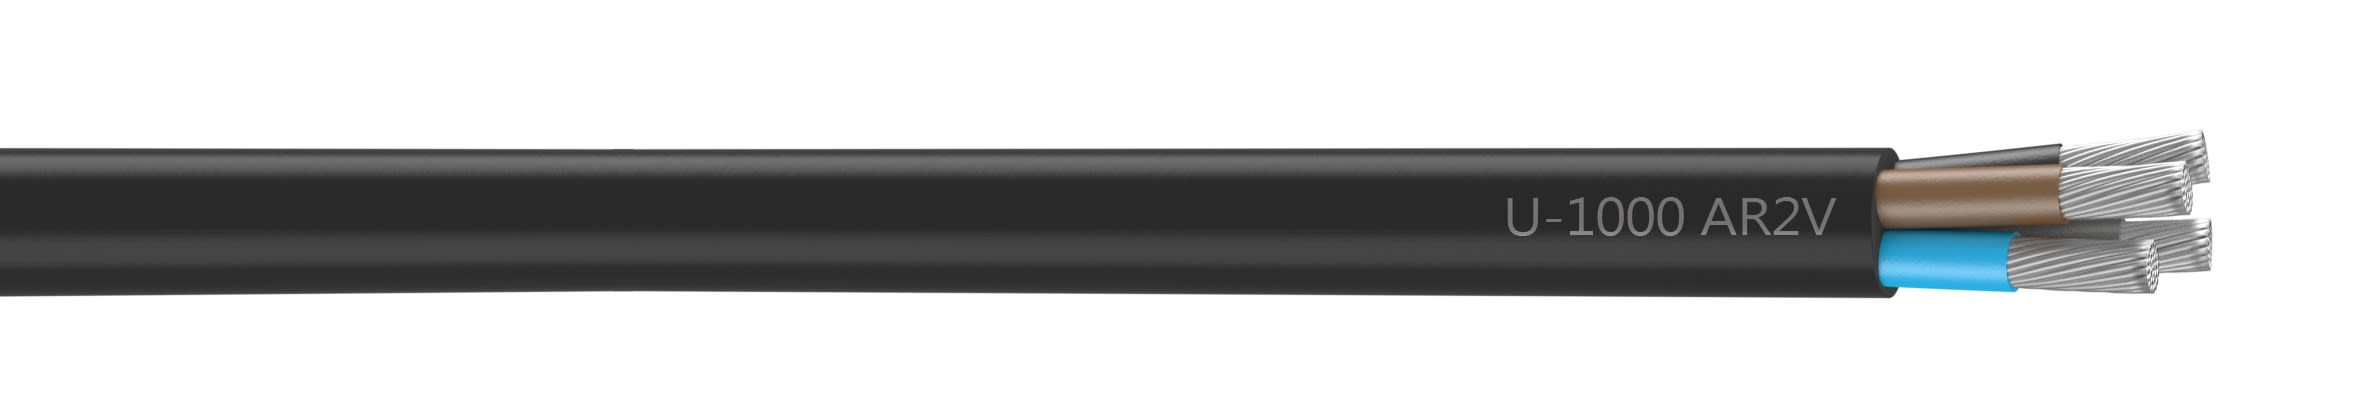 Nexans - Cable rigide U-1000 AR2V aluminium 4x35 longueur a la coupe